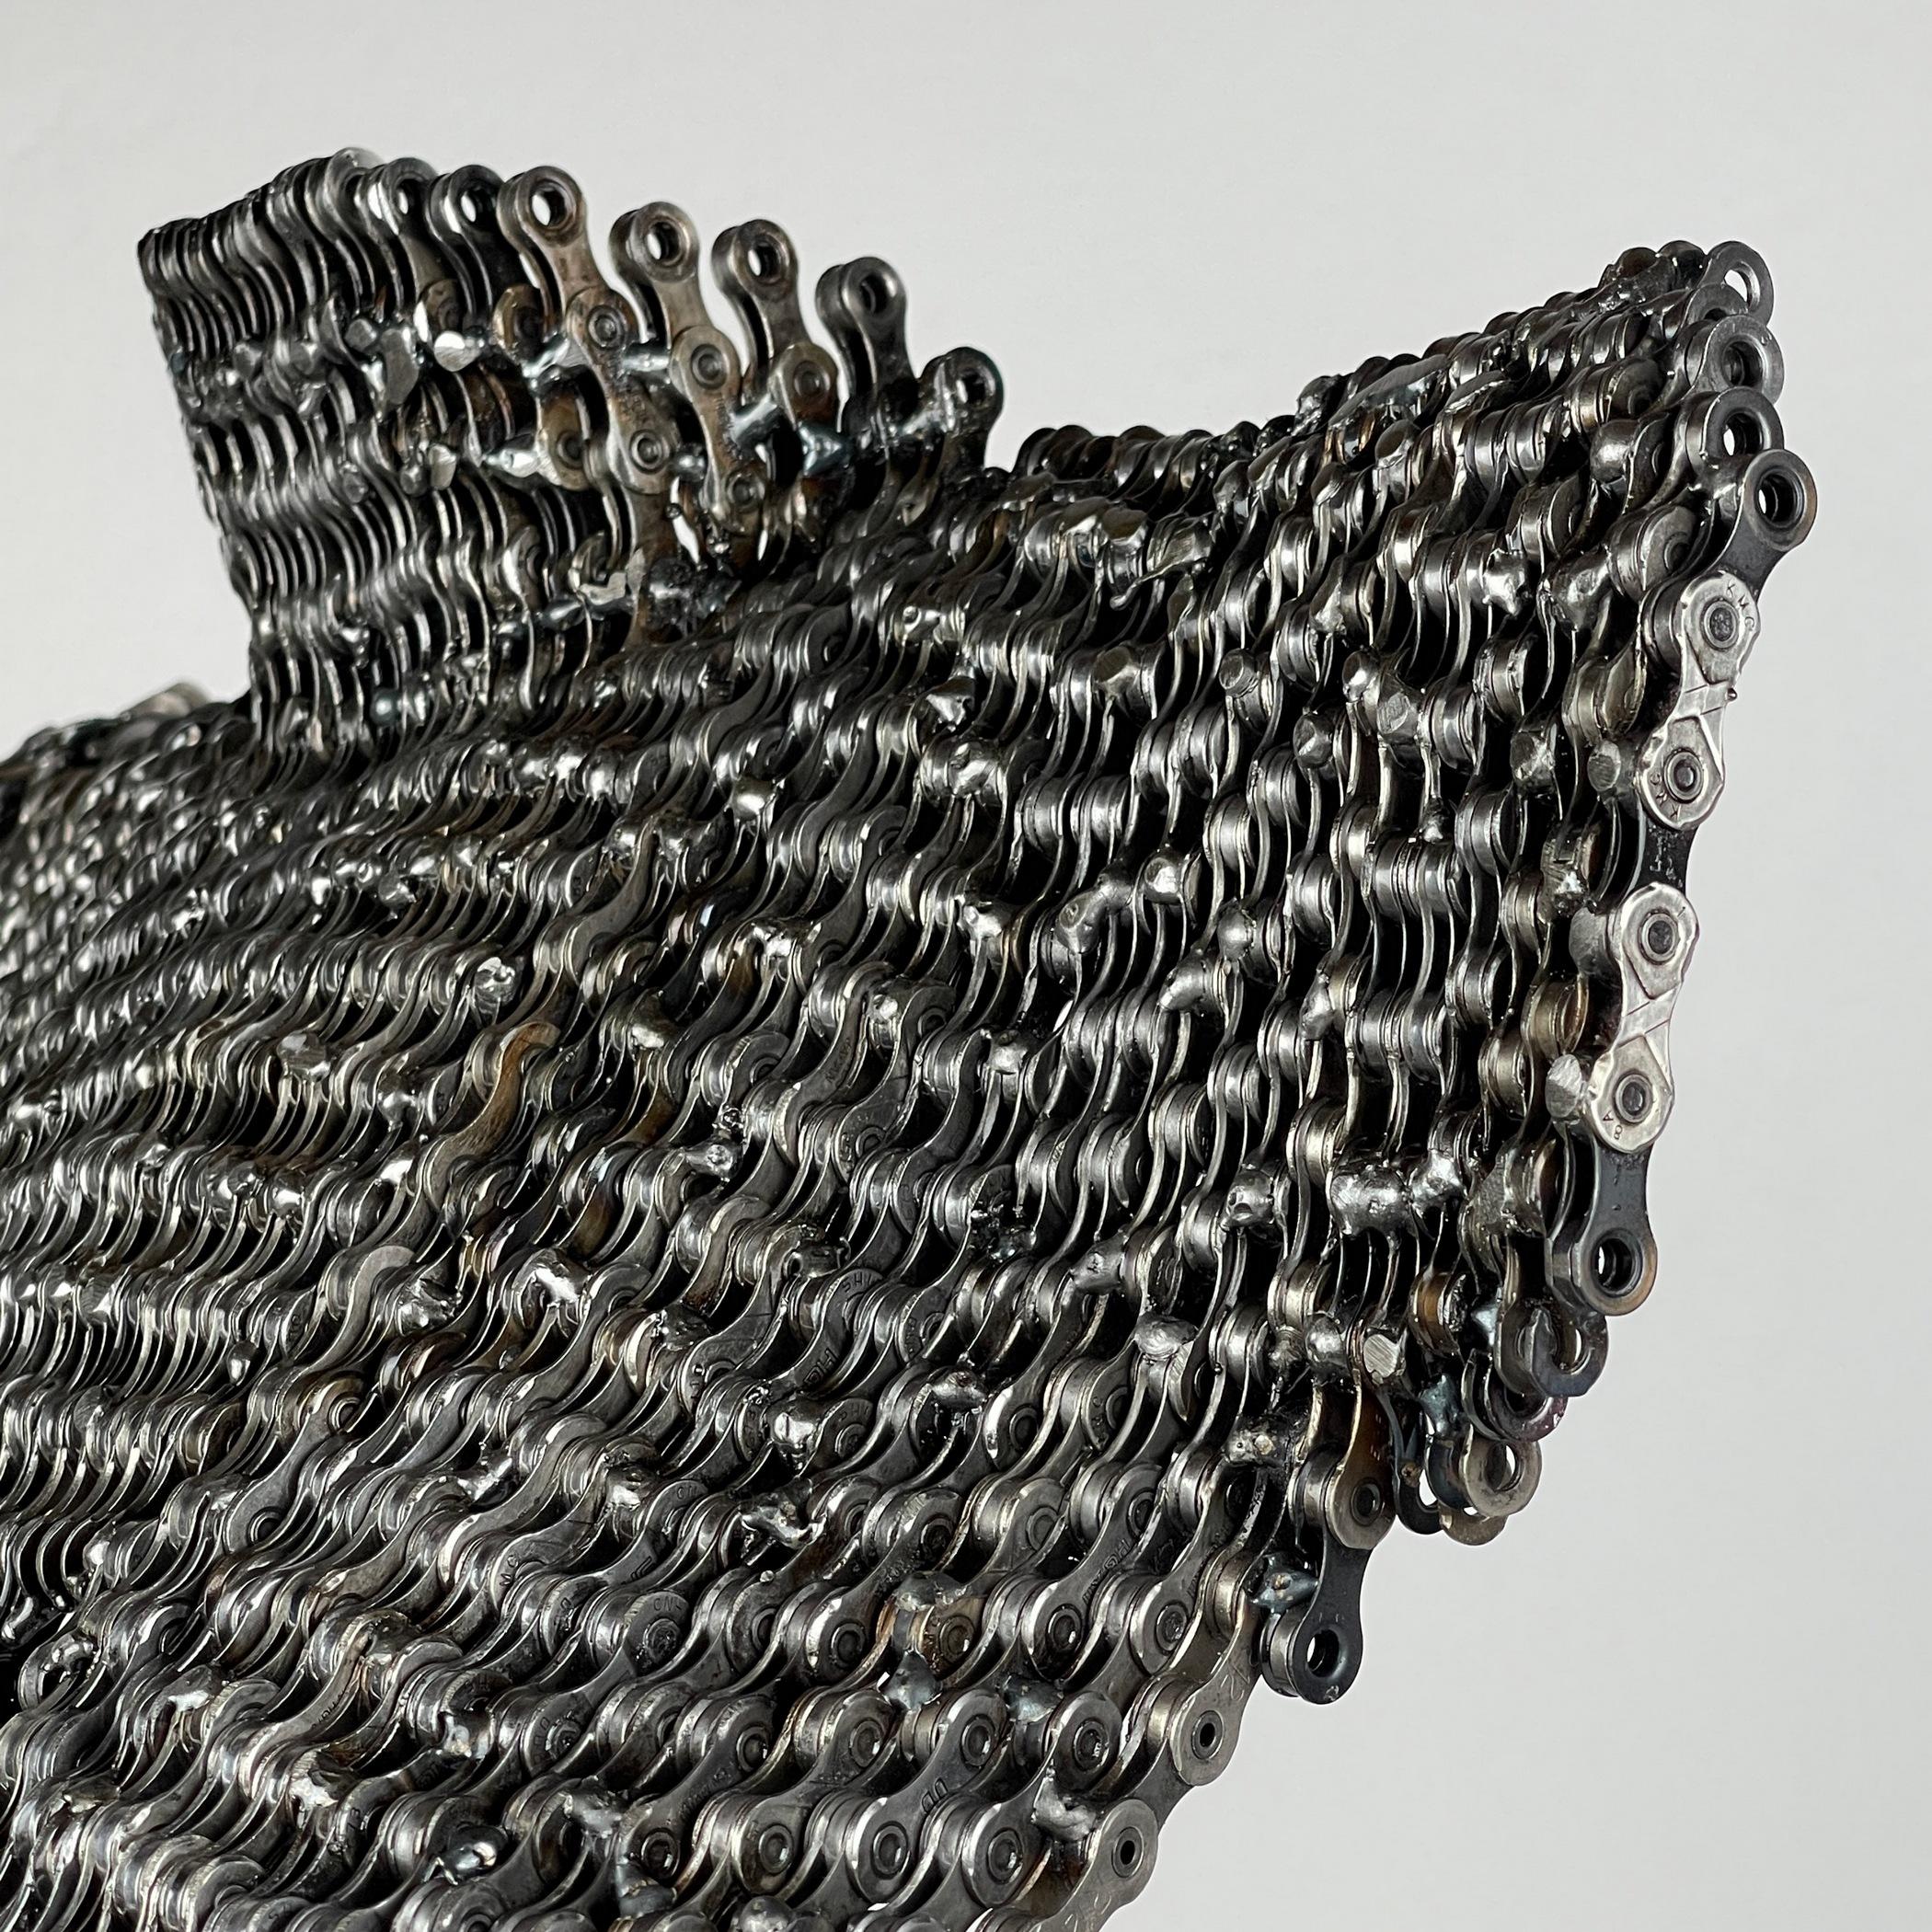 L'Elegance forgée dans le métal : La sculpture unique de Jaka Globočnik  en vente 3